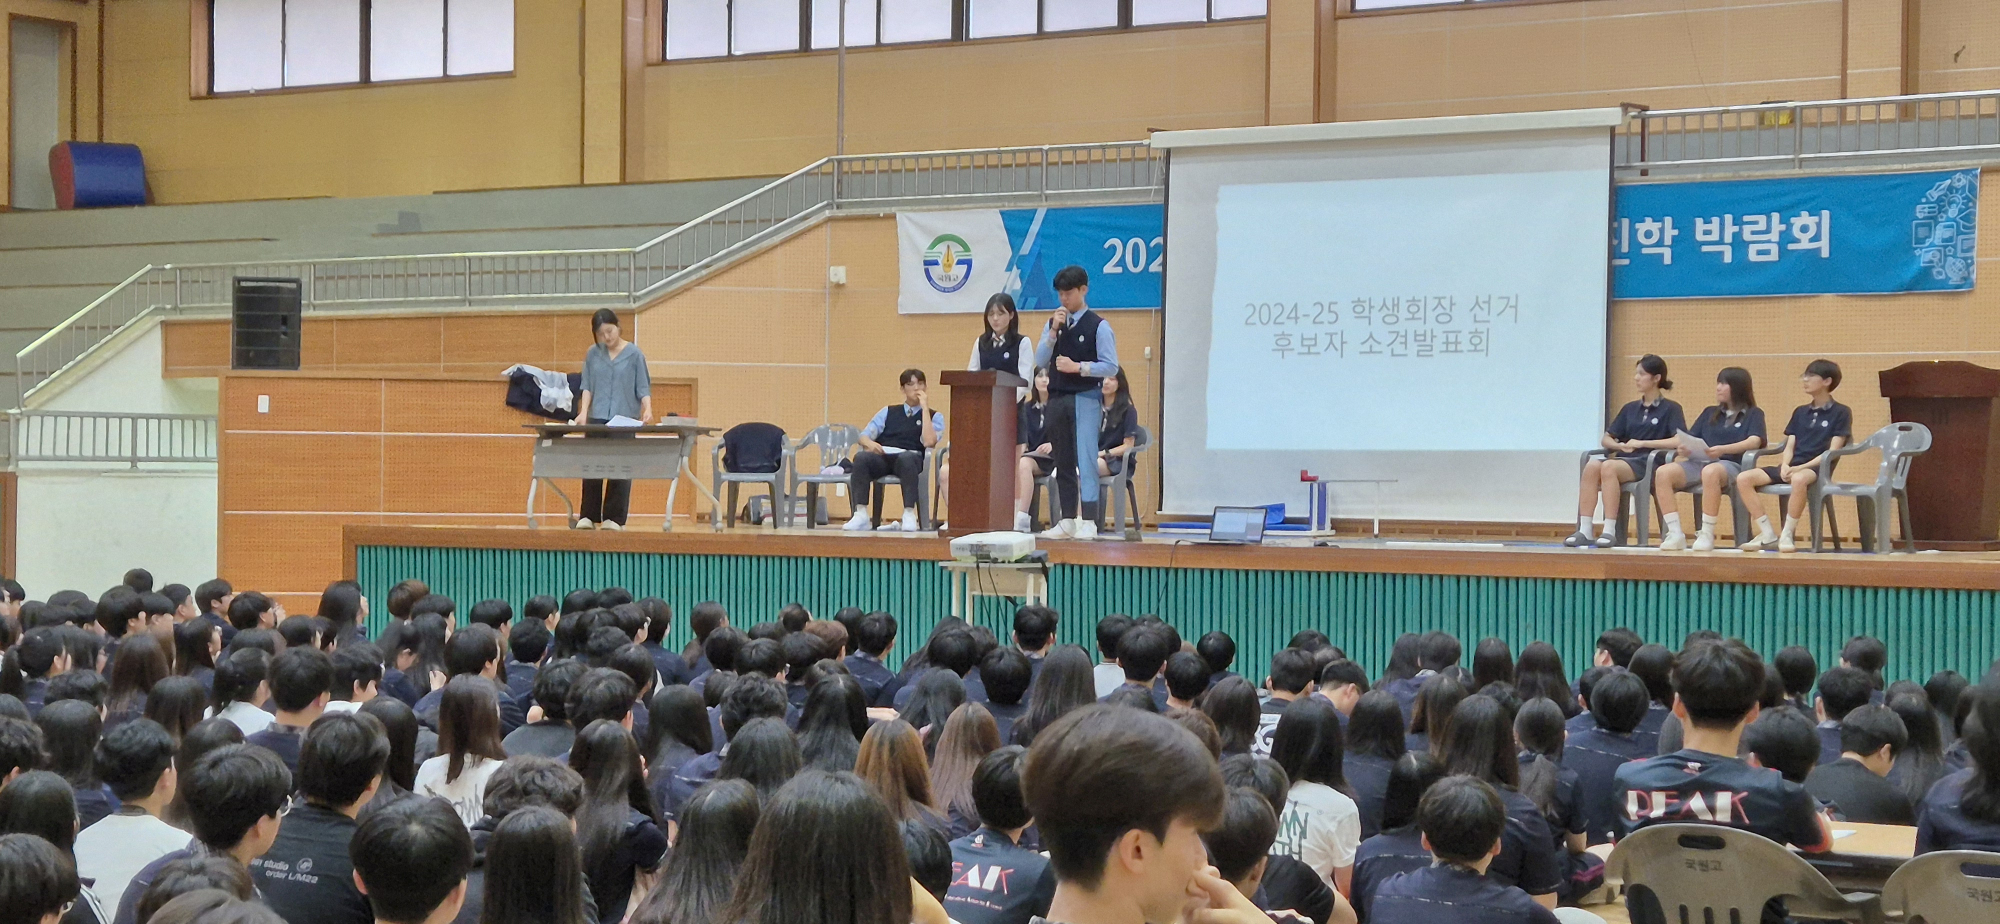 2024-25. 학생회장 선거 (4)